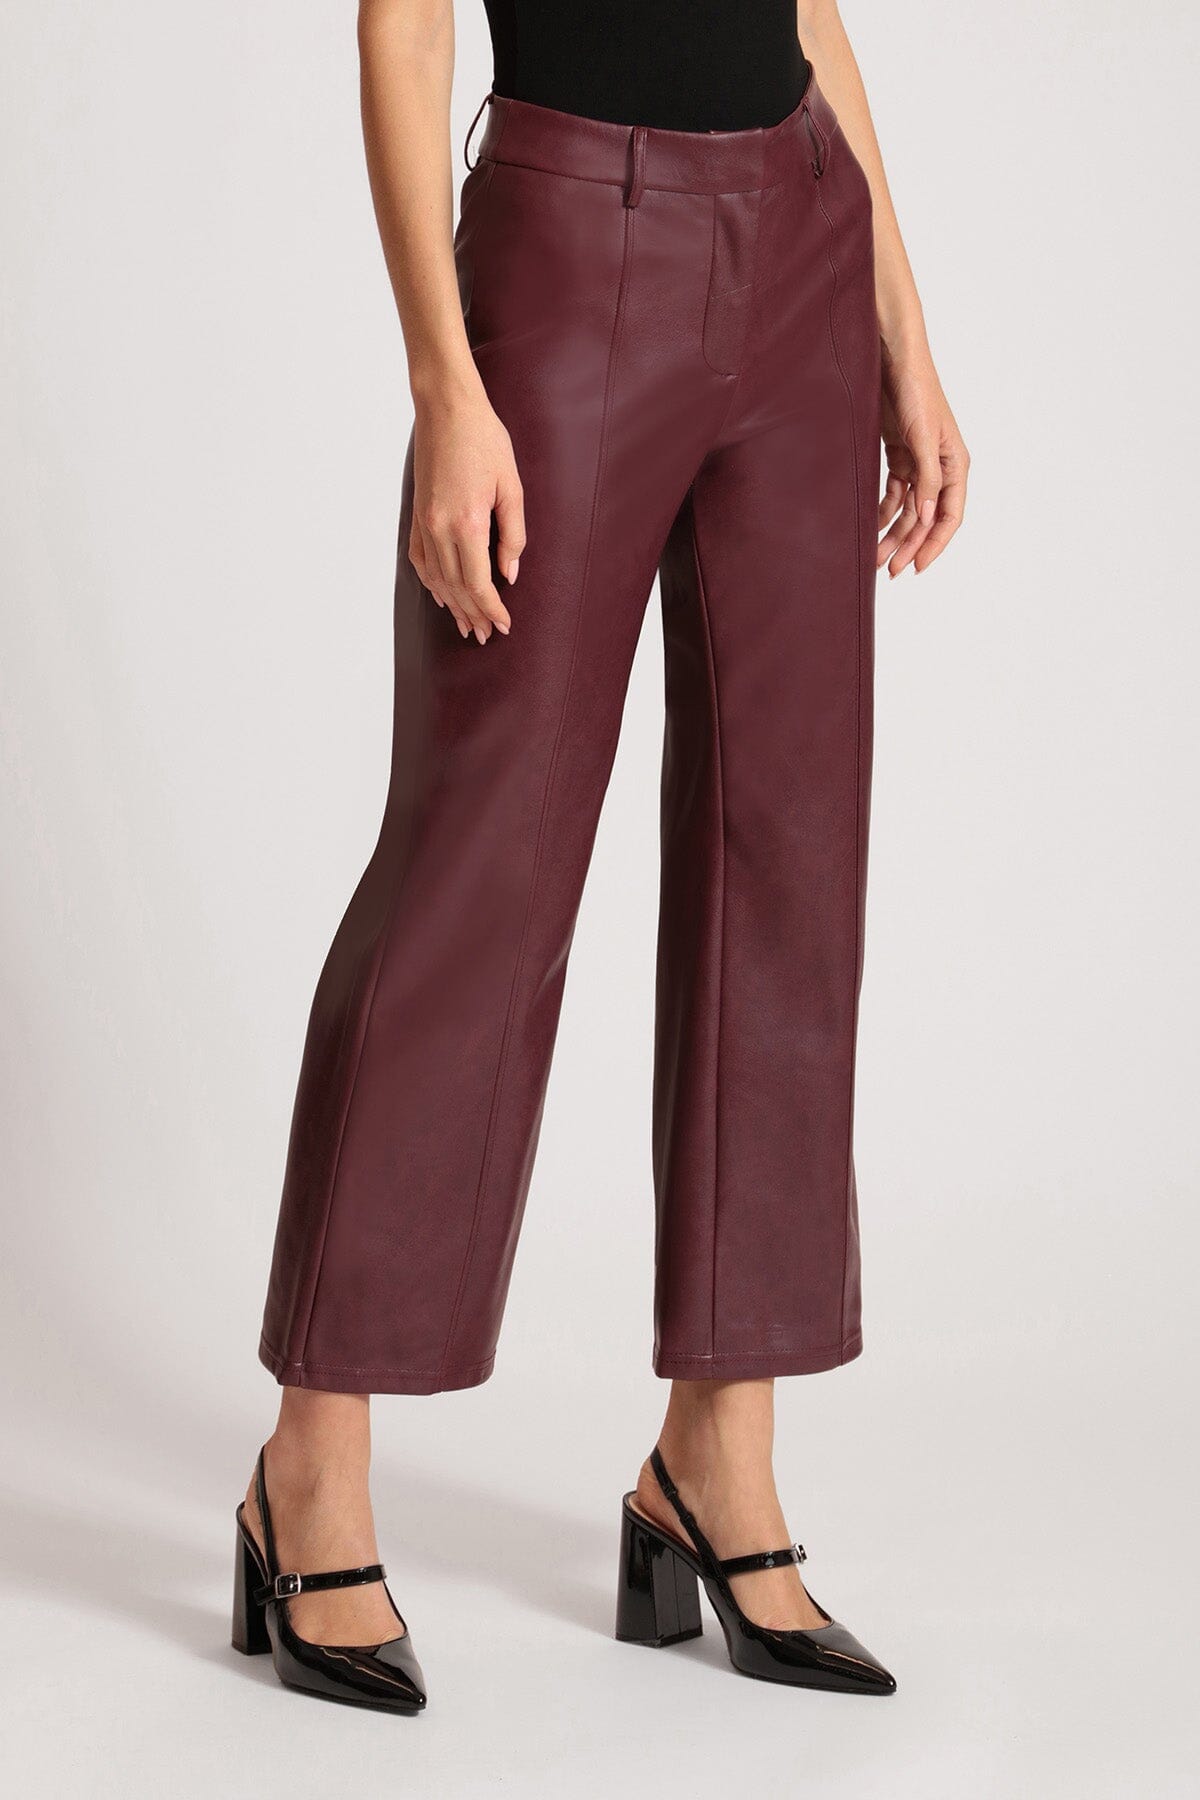 women's faux vegan leather zinfandel dark red wide leg cropped trouser pants Avec Les Filles 